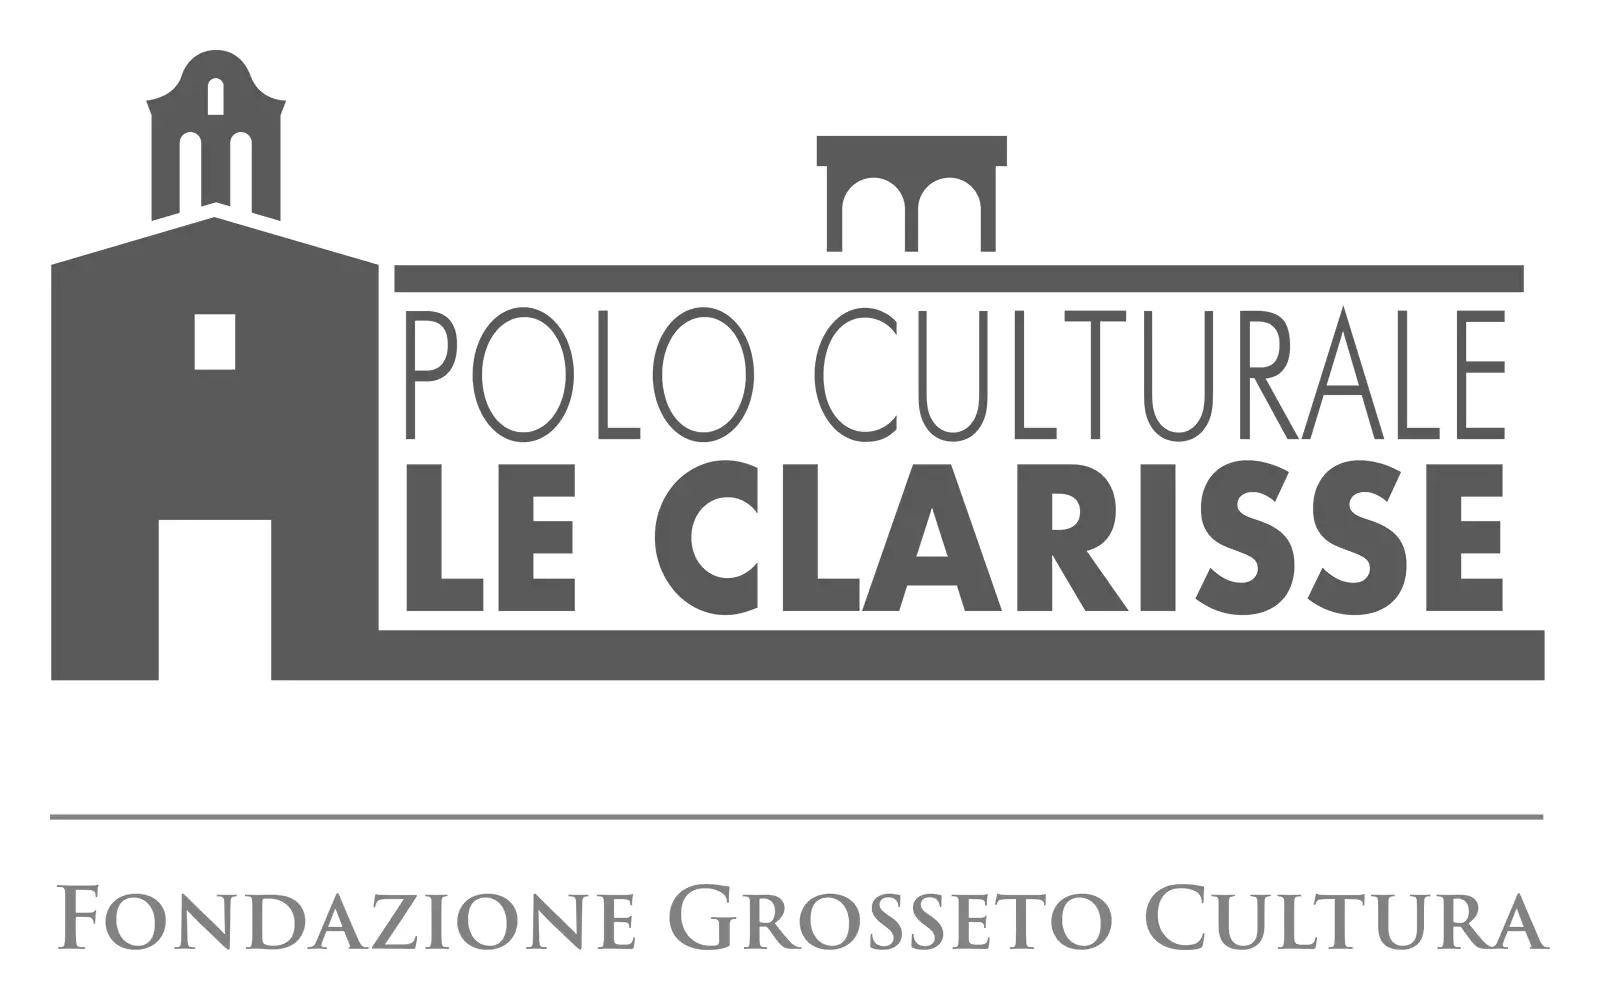 Logo Clarisse e Fondazione Grosseto Cultura